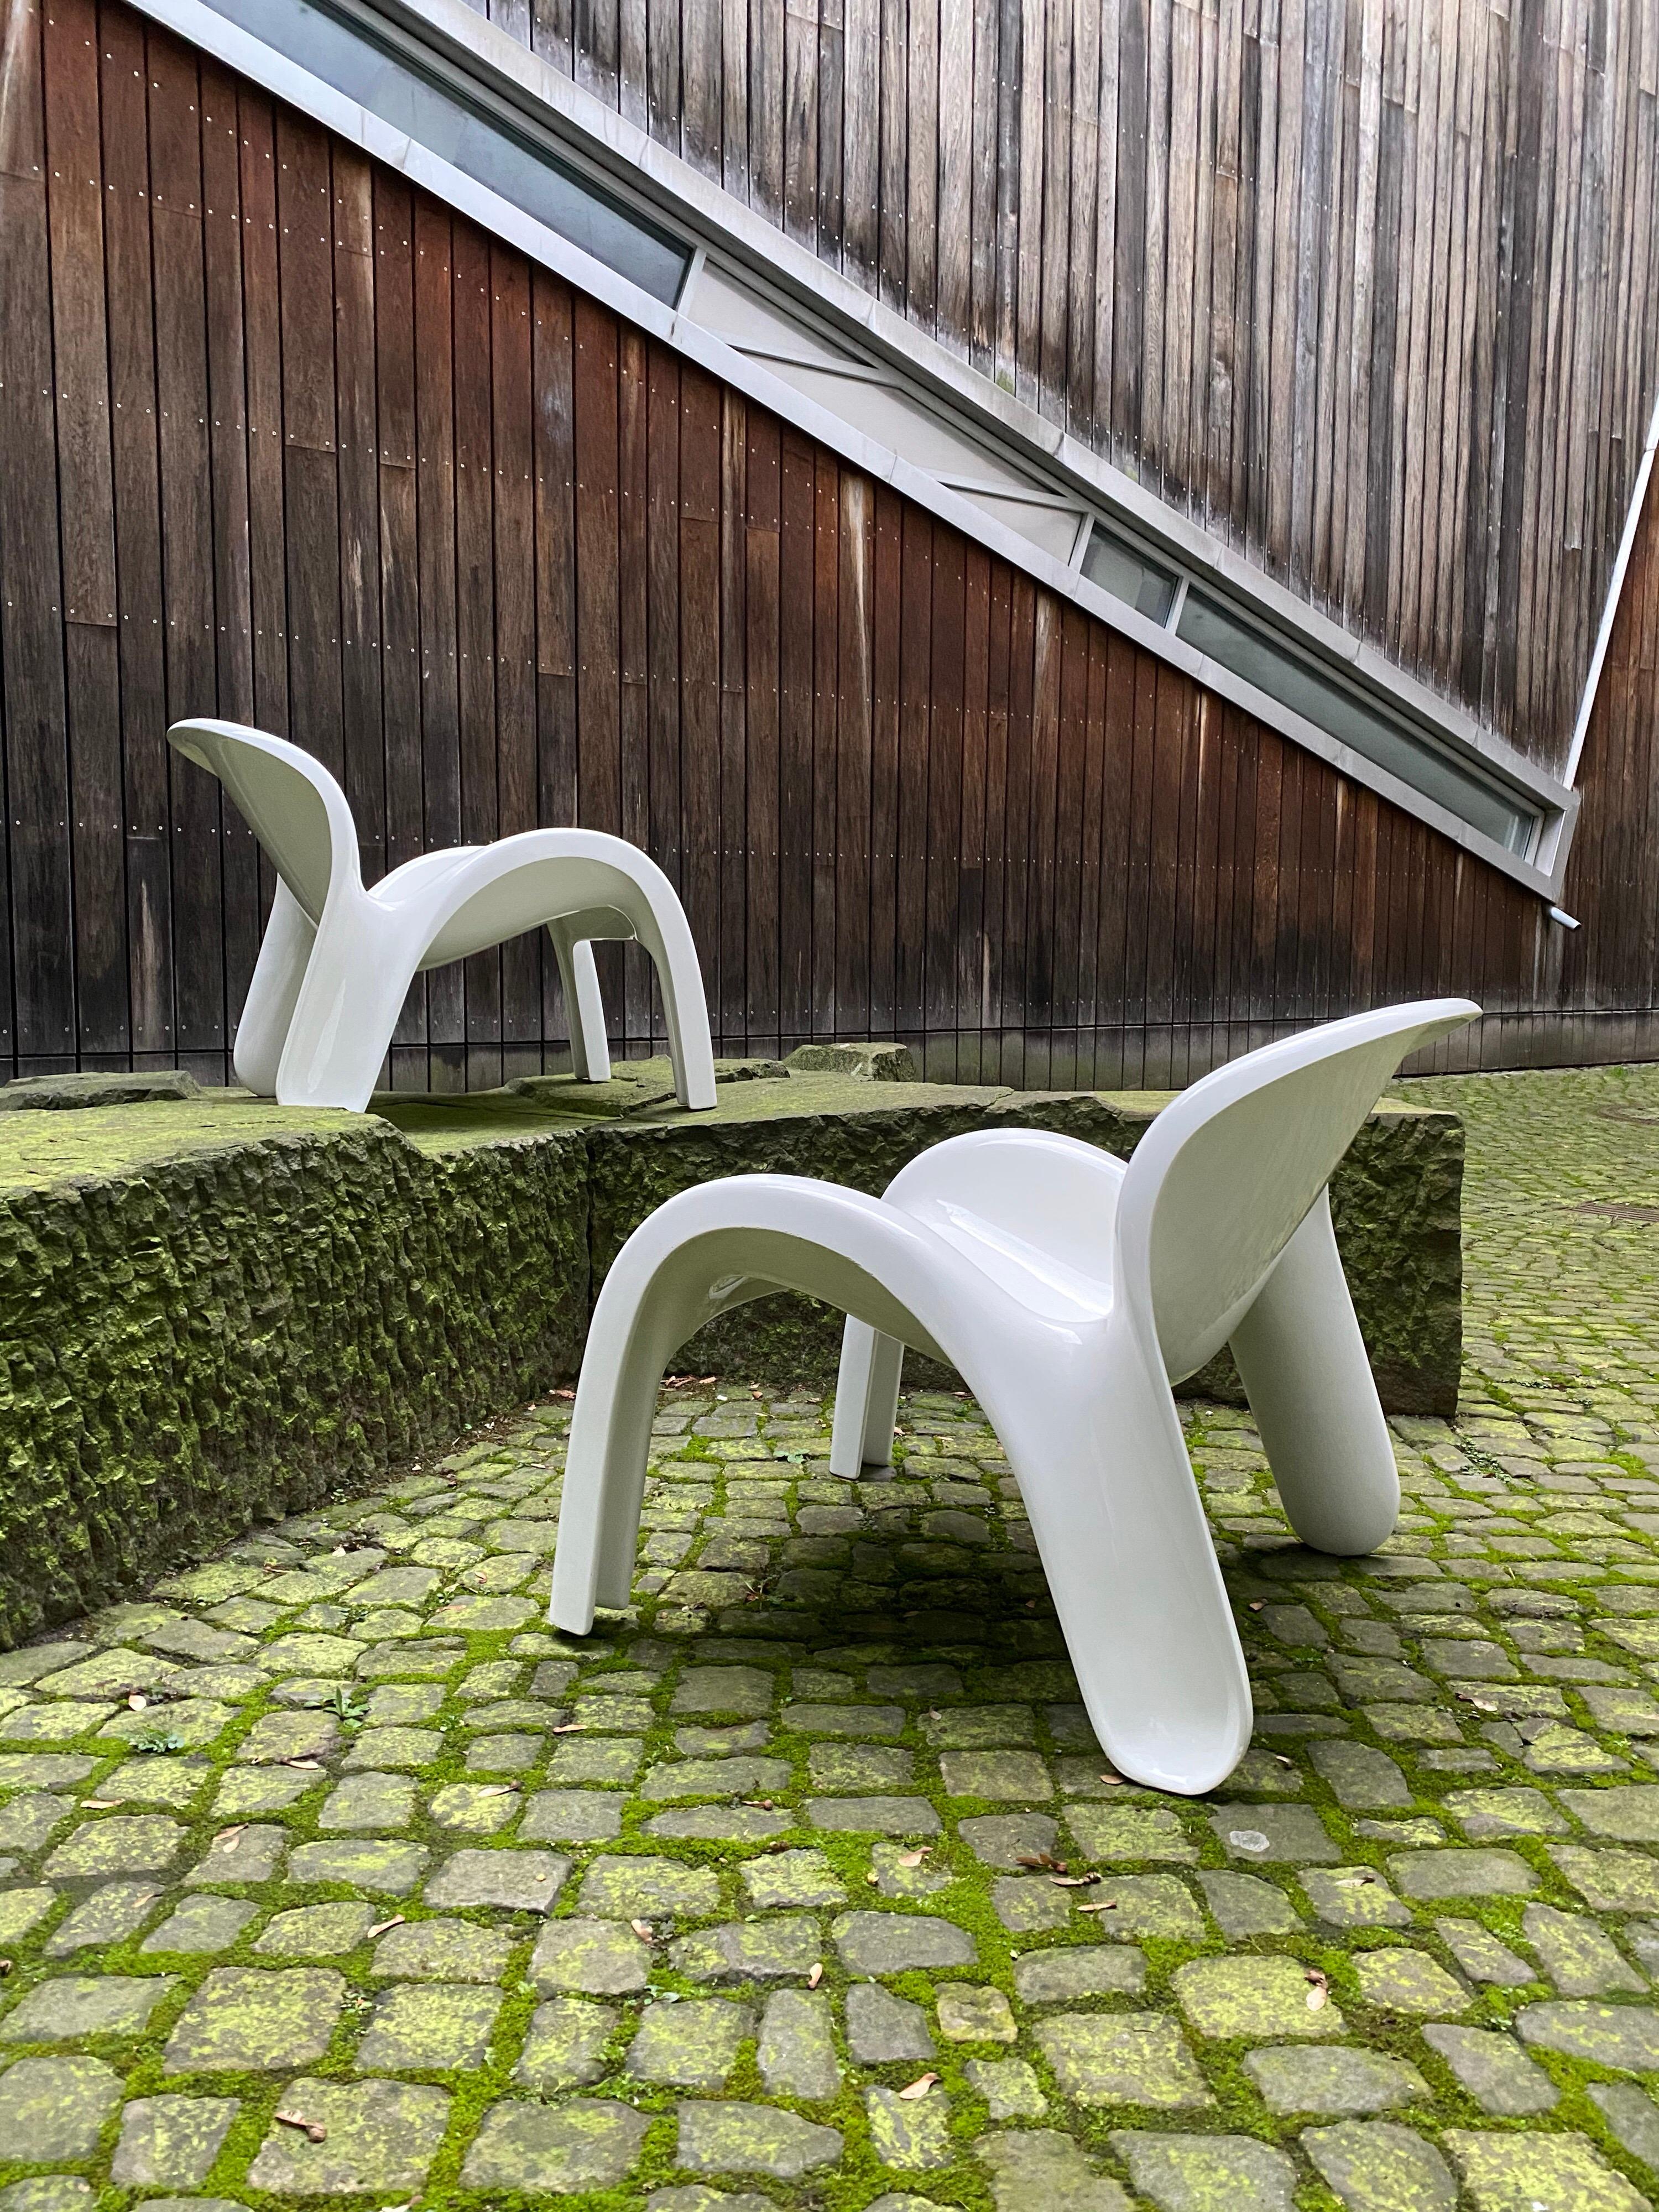 Fabriquées en polyuréthane moulé, ces chaises de Peter Ghyczy pour Reuter, situé à Lemförde, en Allemagne, ont été conçues au début des années 1970 pour être utilisées à l'intérieur ou à l'extérieur.
Ils constituent un bel exemple des designs de